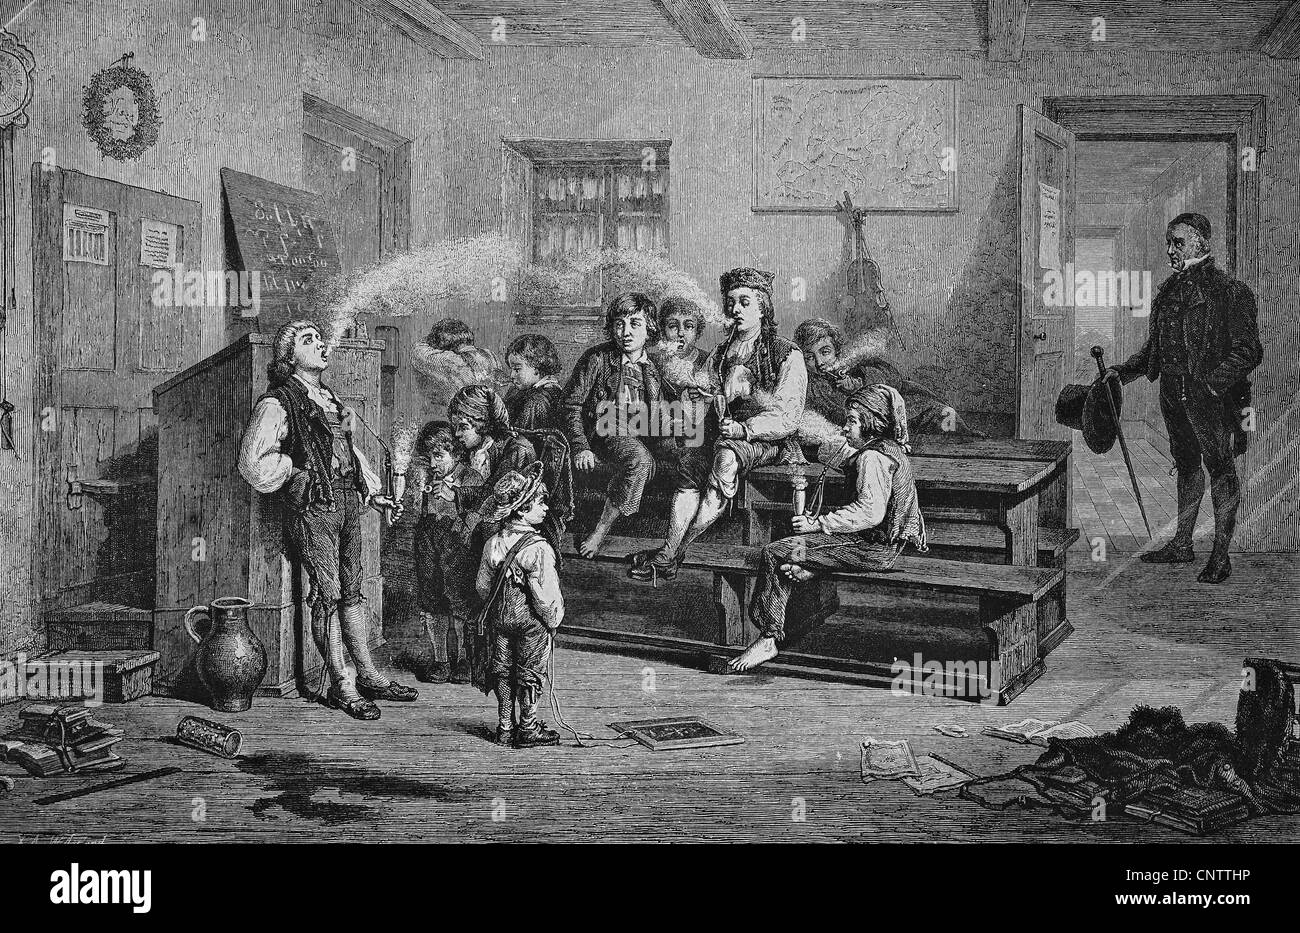 Primeros experimentos con el tabaco en una escuela de pueblo, histórico grabado, 1869 Foto de stock